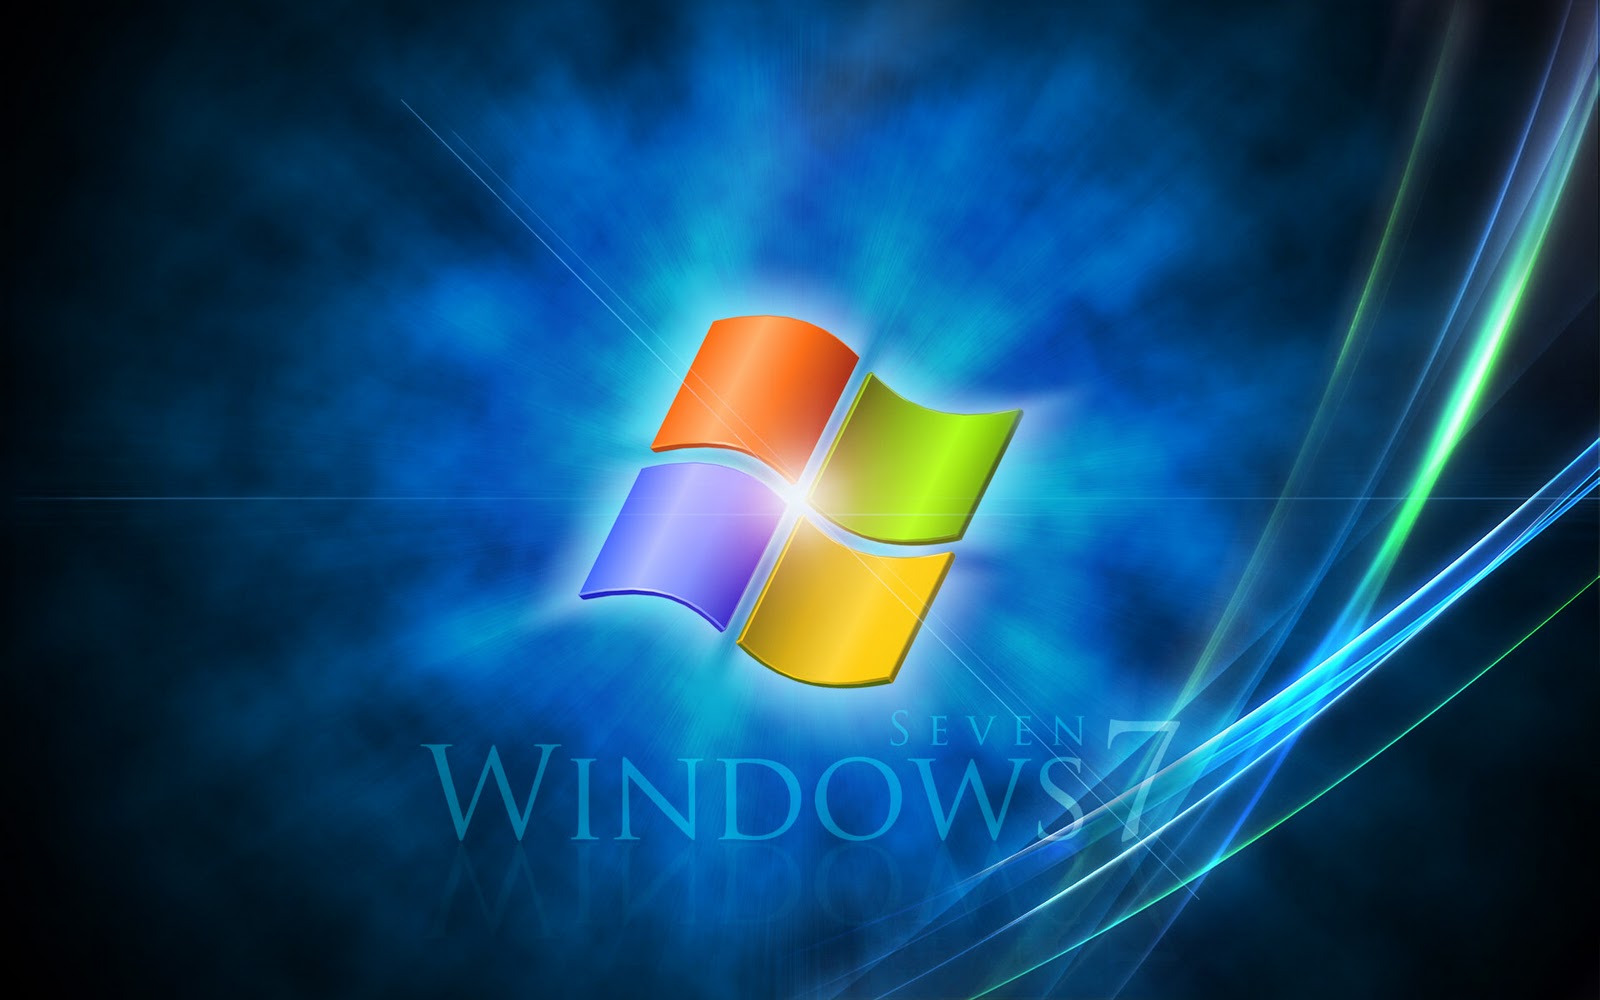 Windows 7 Wallpaper Collection Part 2 Kumpulan Gambar